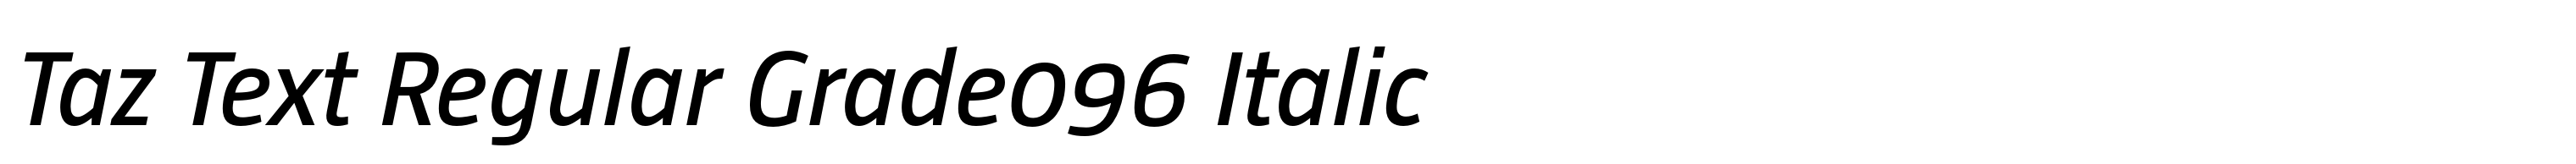 Taz Text Regular Grade096 Italic